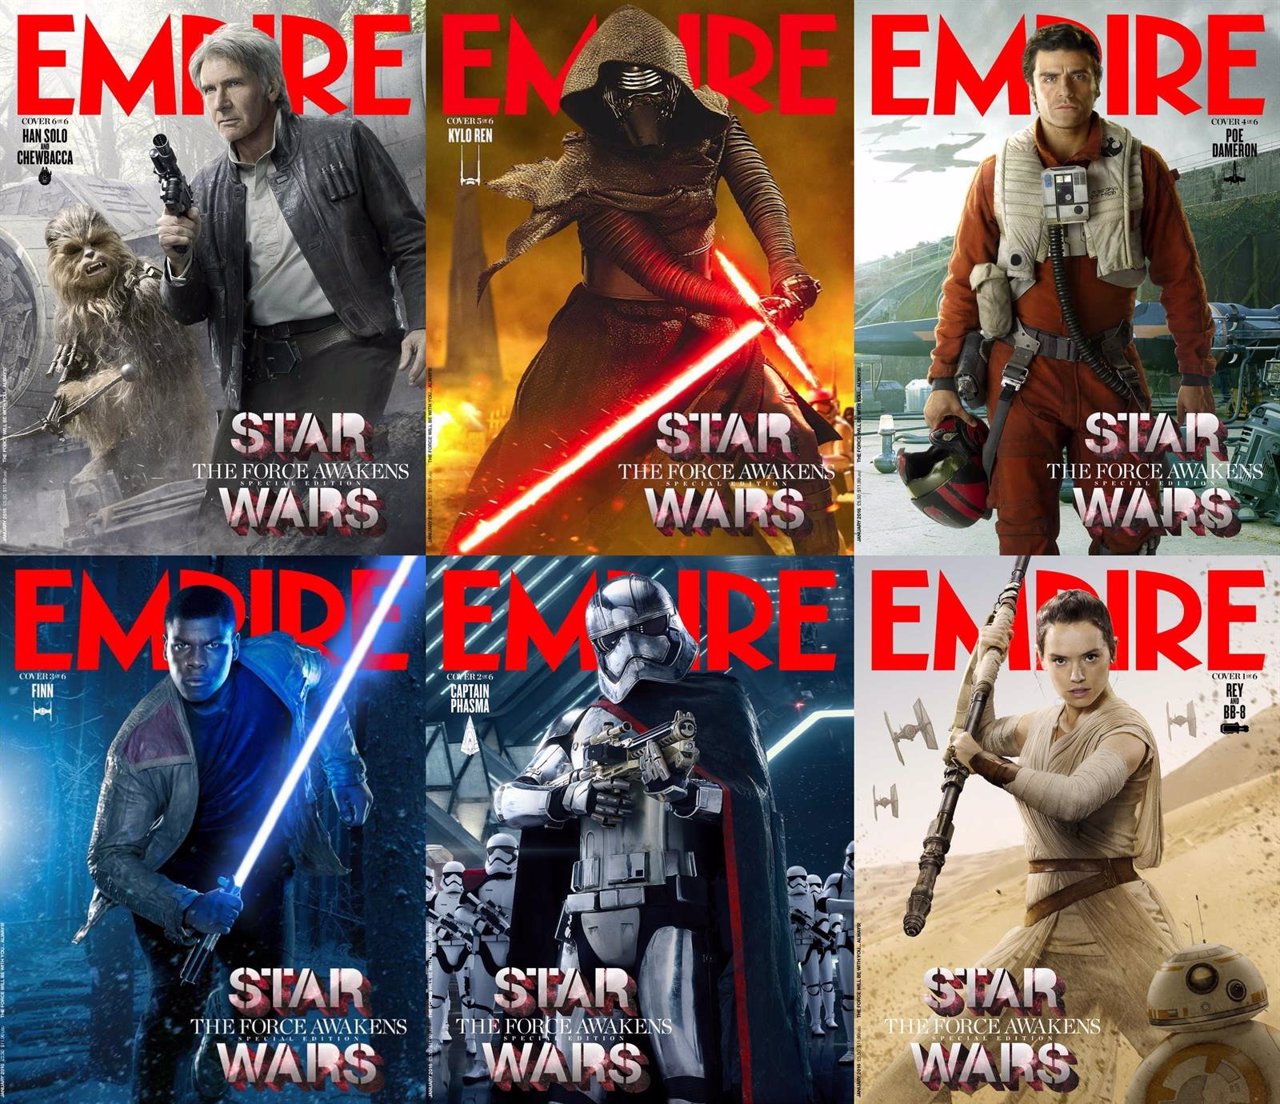 Star Wars 7 en Empire